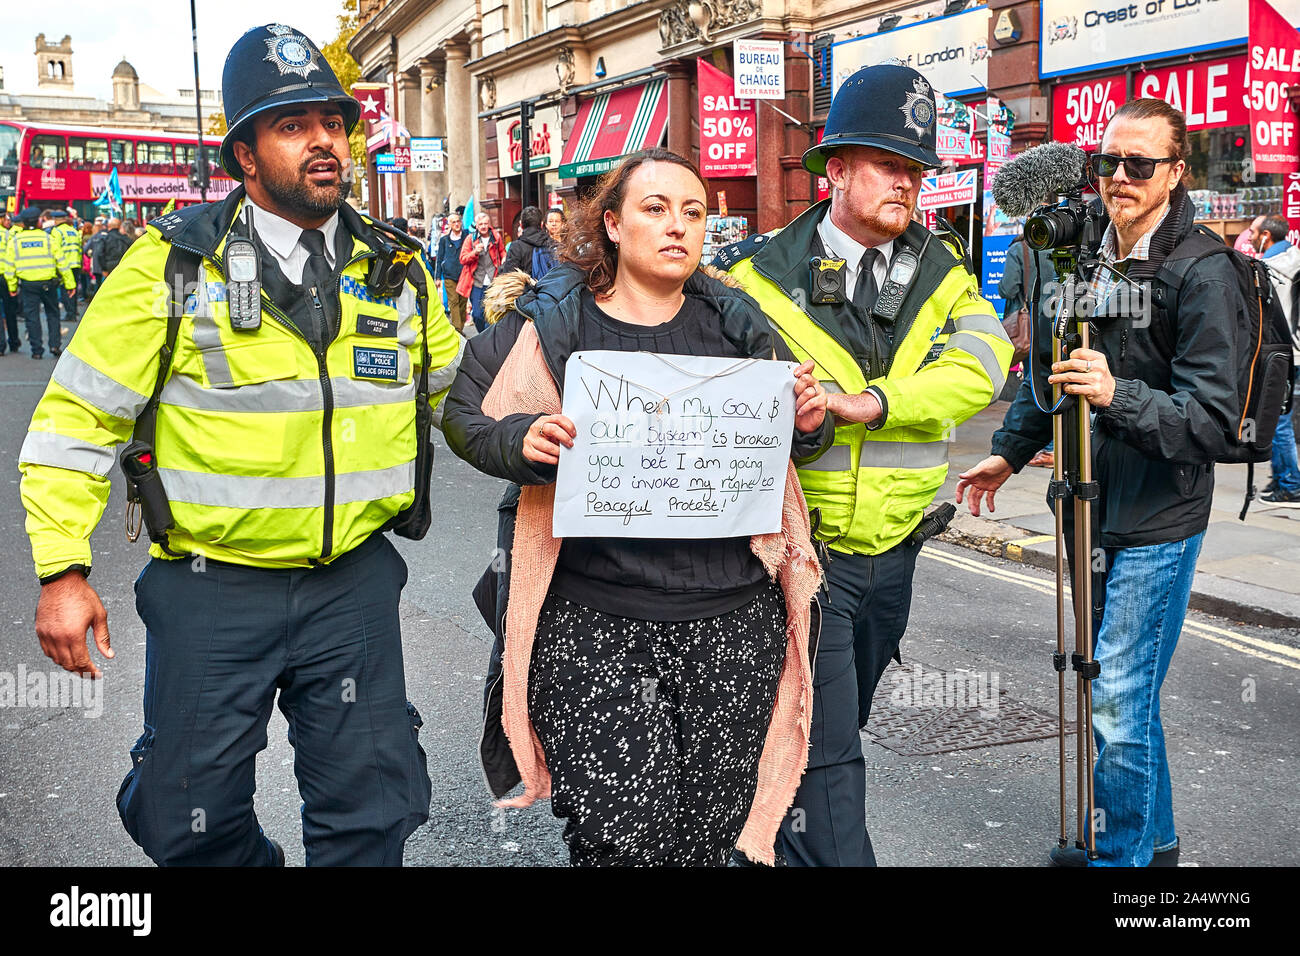 Londres, Reino Unido - 16 Oct, 2019: Una activista ambiental de la extinción, la rebelión es arrastrada por la policía tras el bloqueo de una carretera en Trafalgar Square. Foto de stock